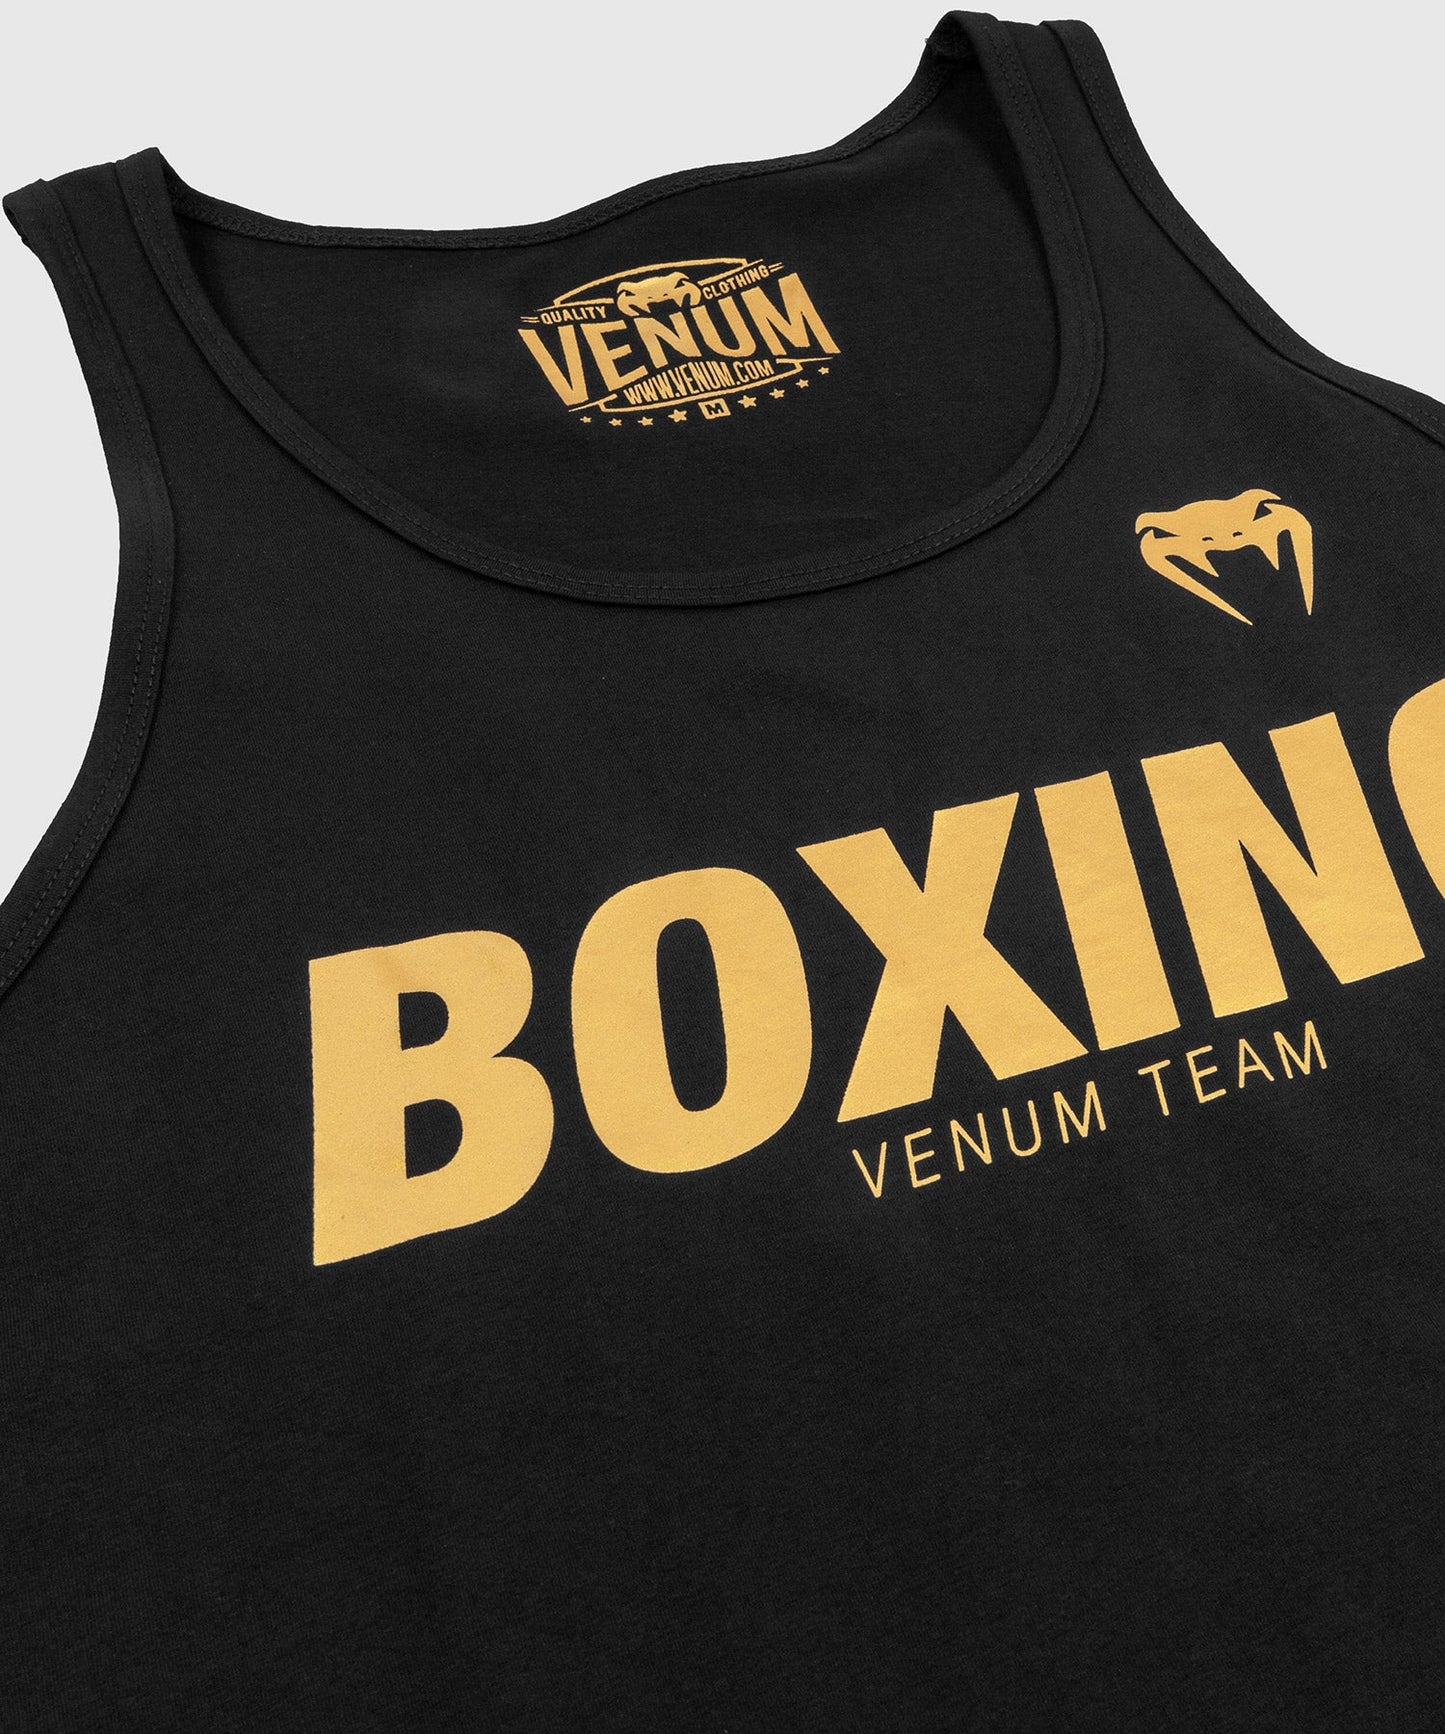 Venum Boxing VT Tank Top - Black/Gold